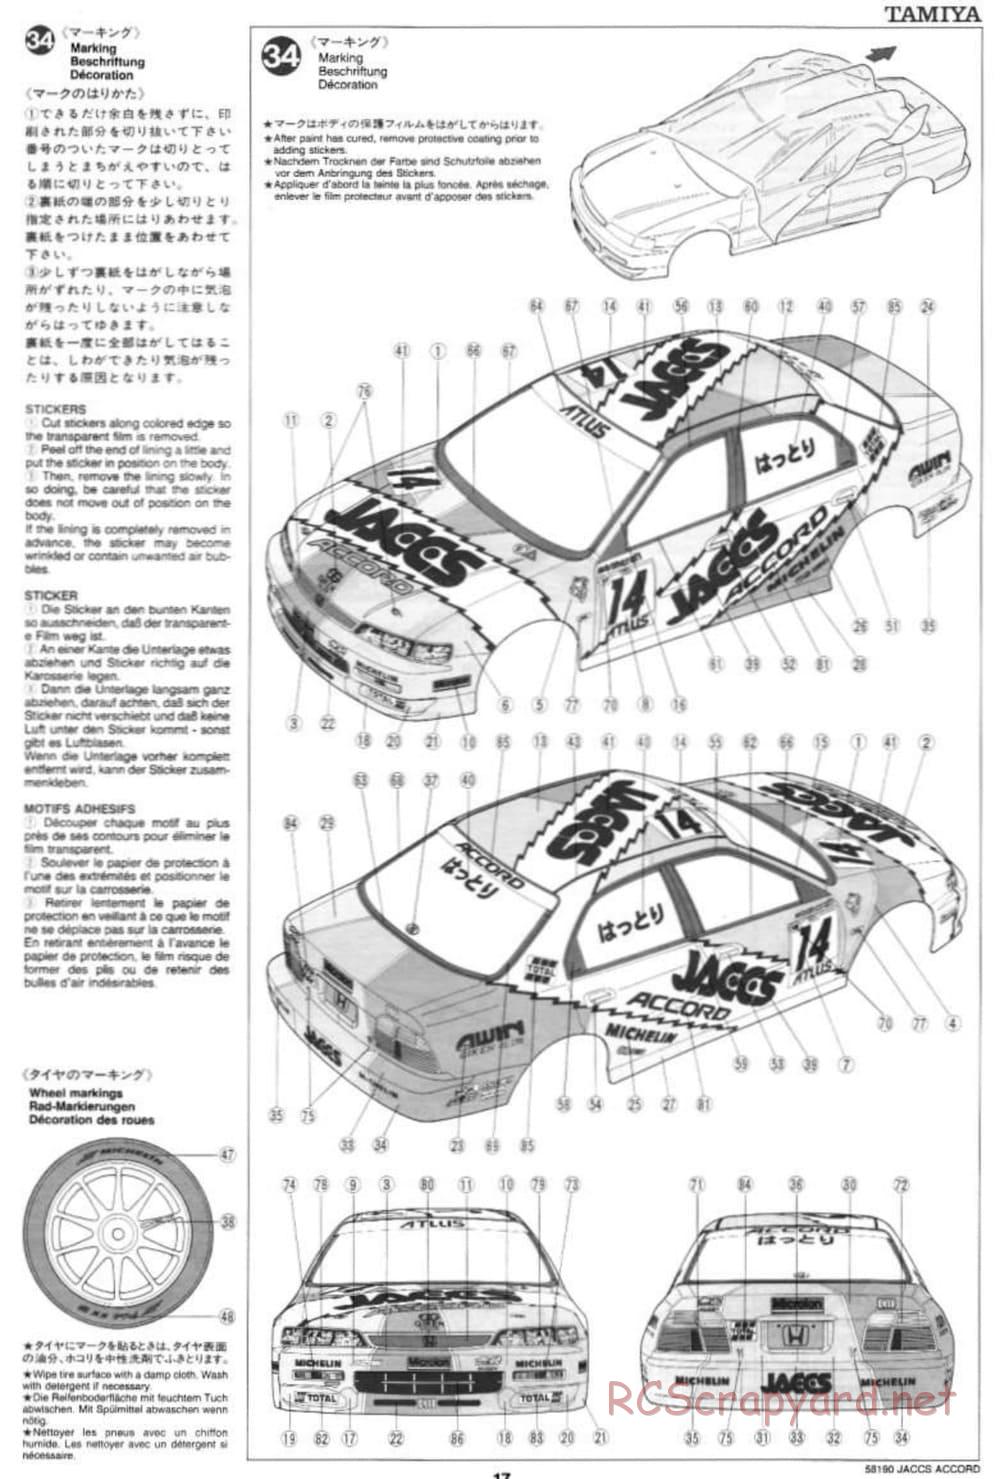 Tamiya - JACCS Honda Accord - FF-01 Chassis - Manual - Page 17